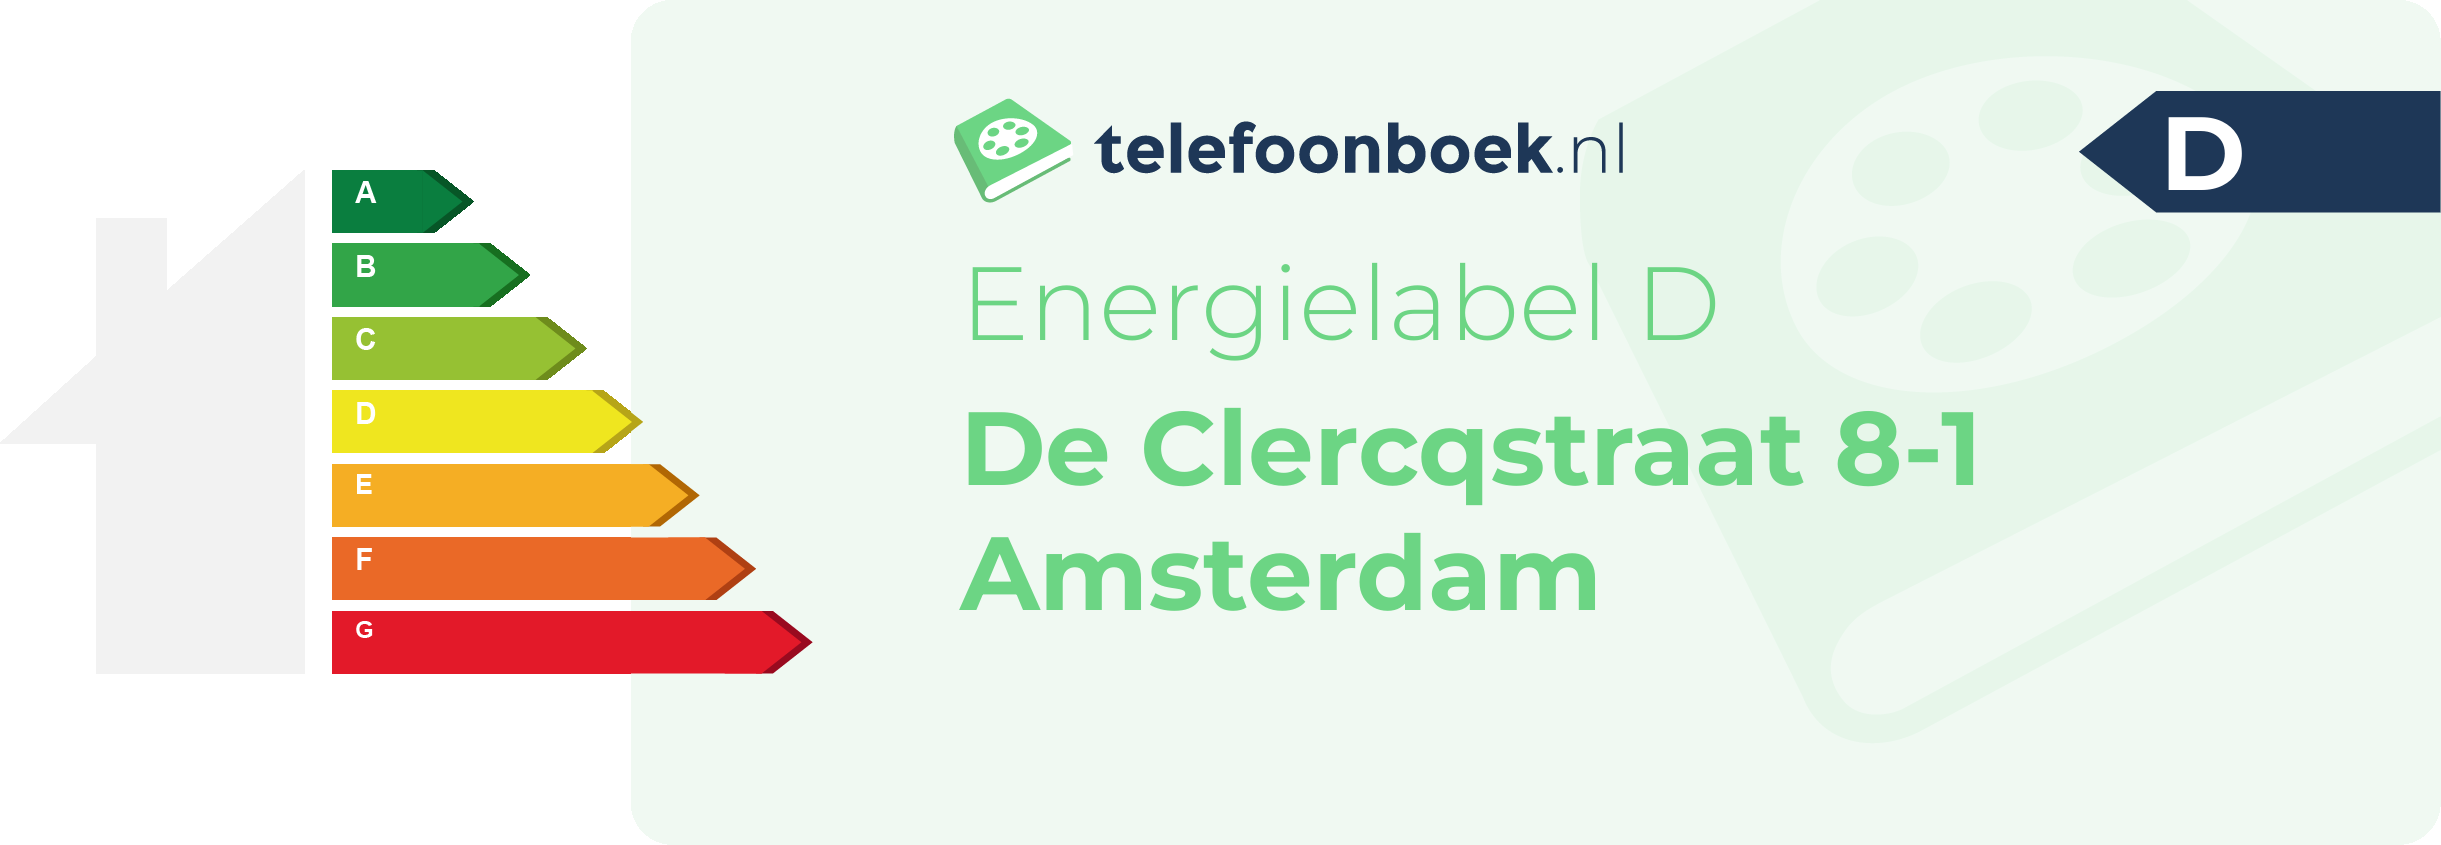 Energielabel De Clercqstraat 8-1 Amsterdam